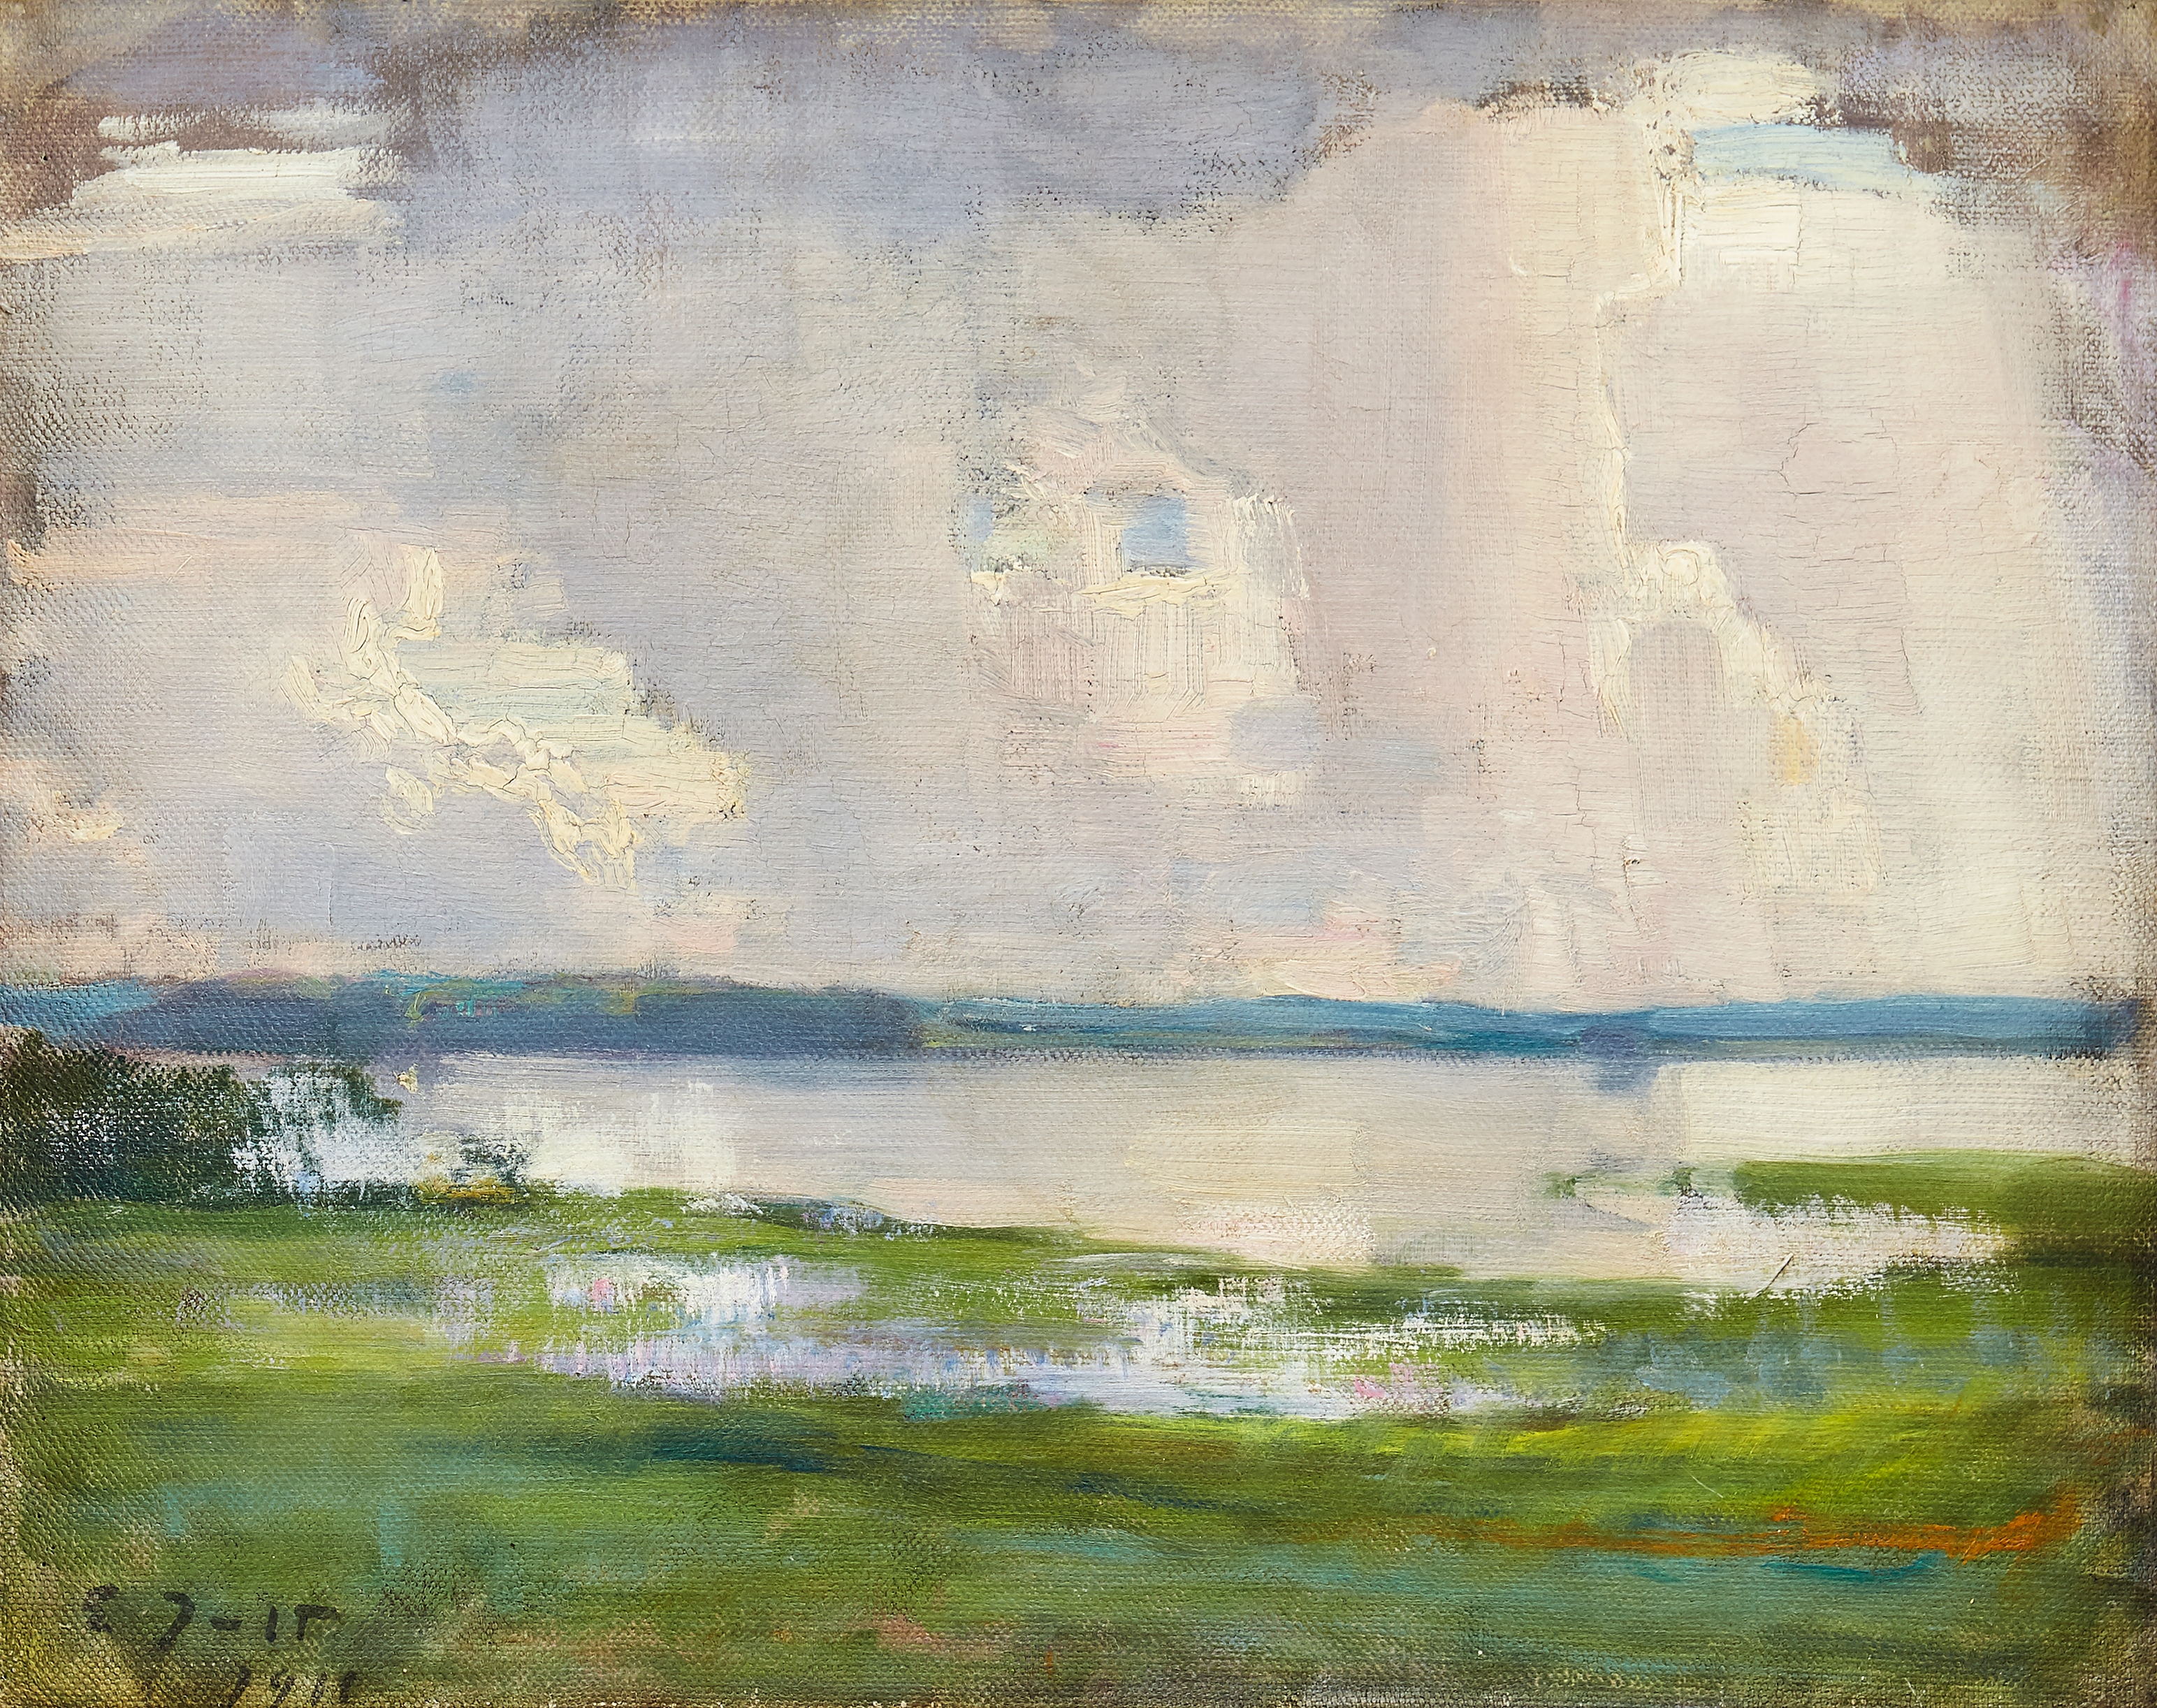 Landscape from Lake Tuusala by Eero Järnefelt, 1911